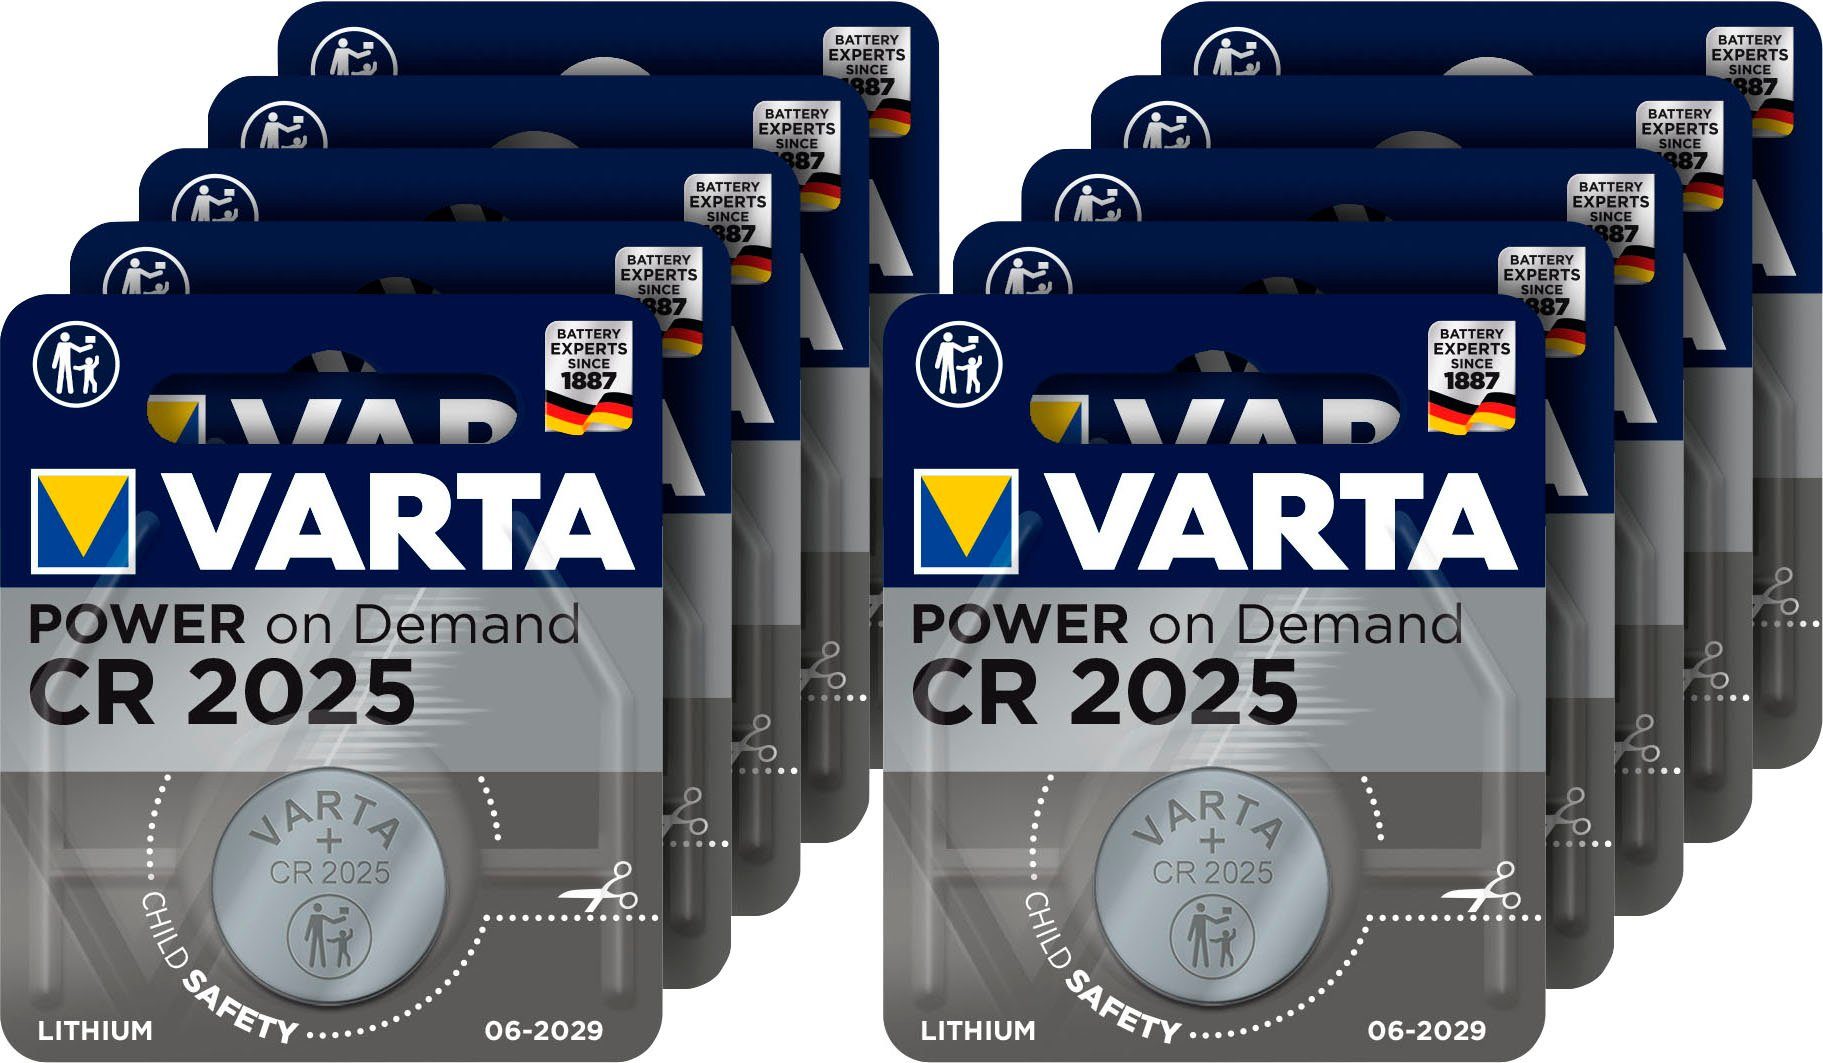 VARTA »5x Varta CR2025 Lithium Batterie - 3V Knopfzellen im Blister«  Batterie